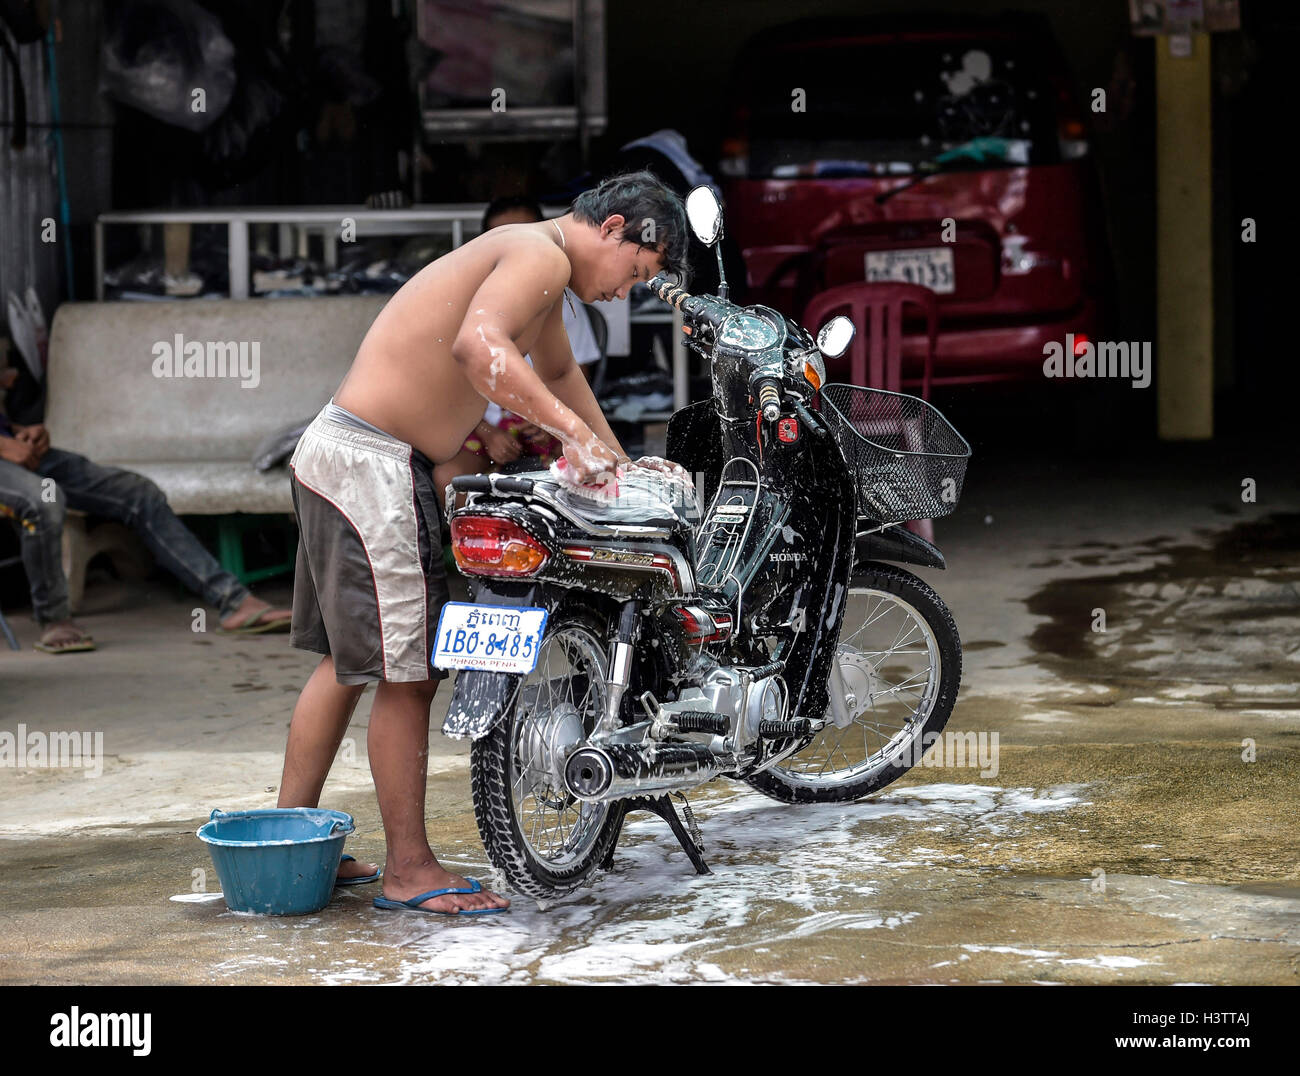 L'homme se lave le cyclomoteur, Phnom Penh, Cambodge Banque D'Images